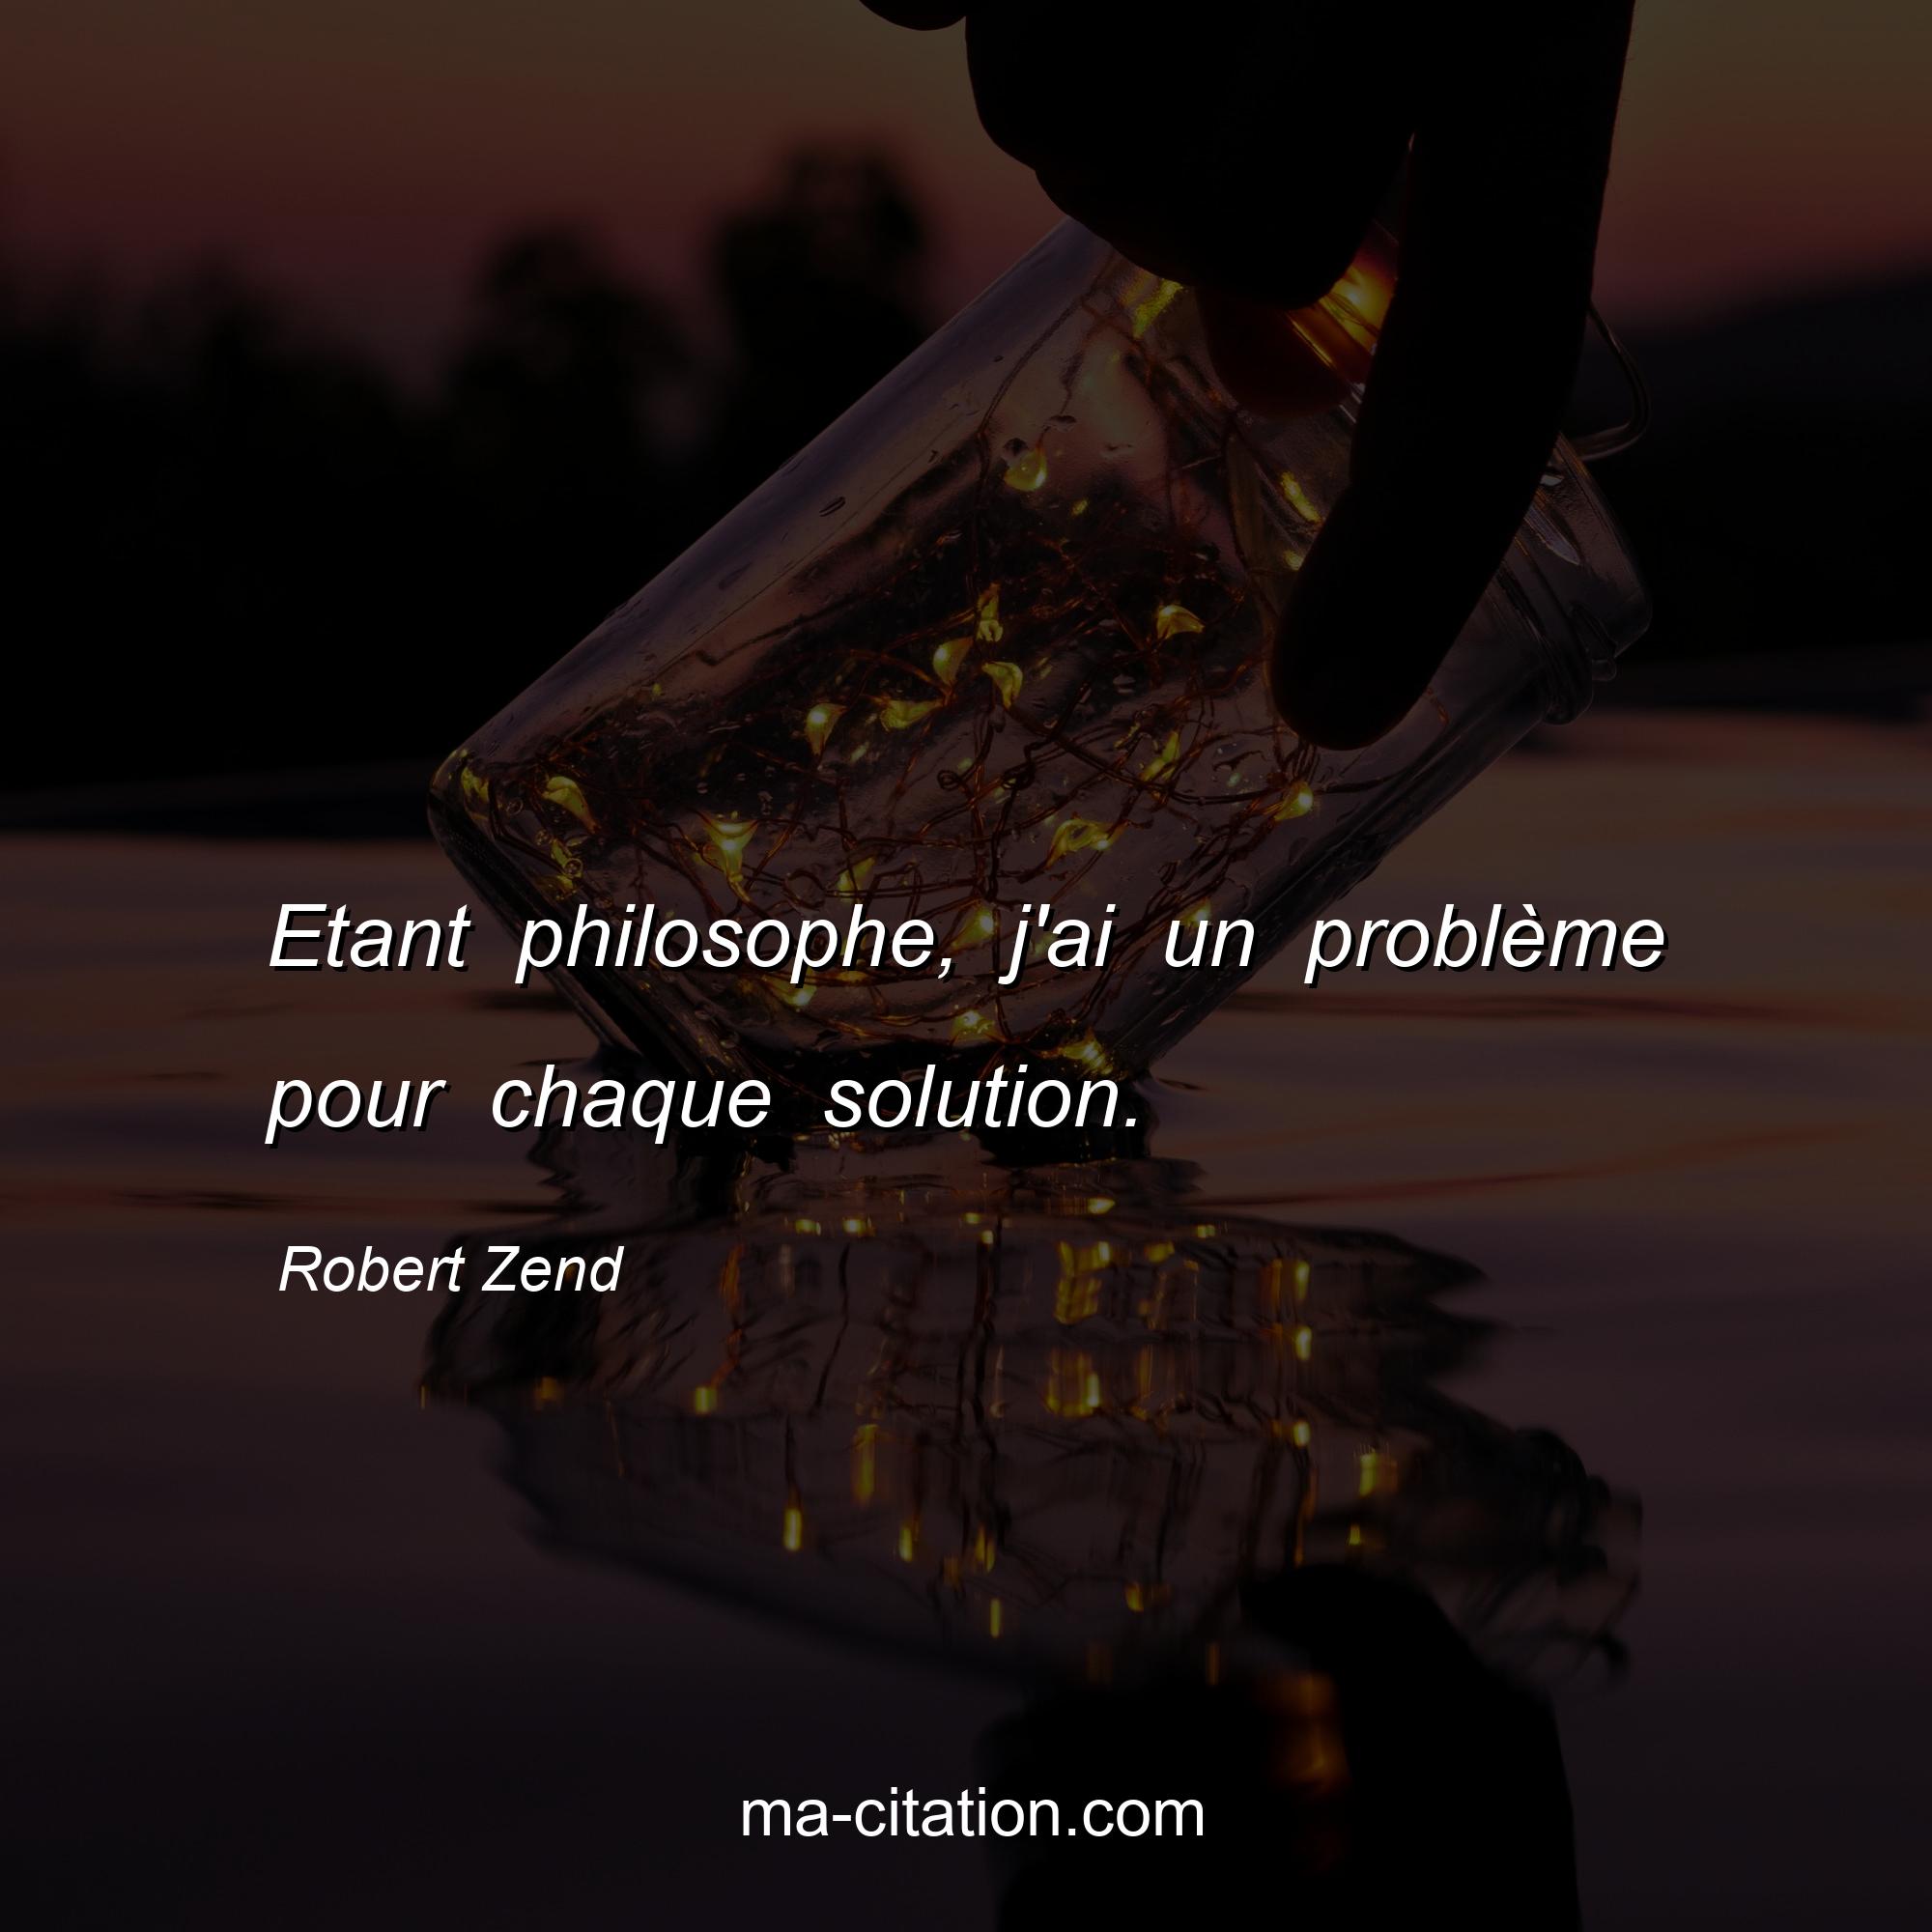 Robert Zend : Etant philosophe, j'ai un problème pour chaque solution.